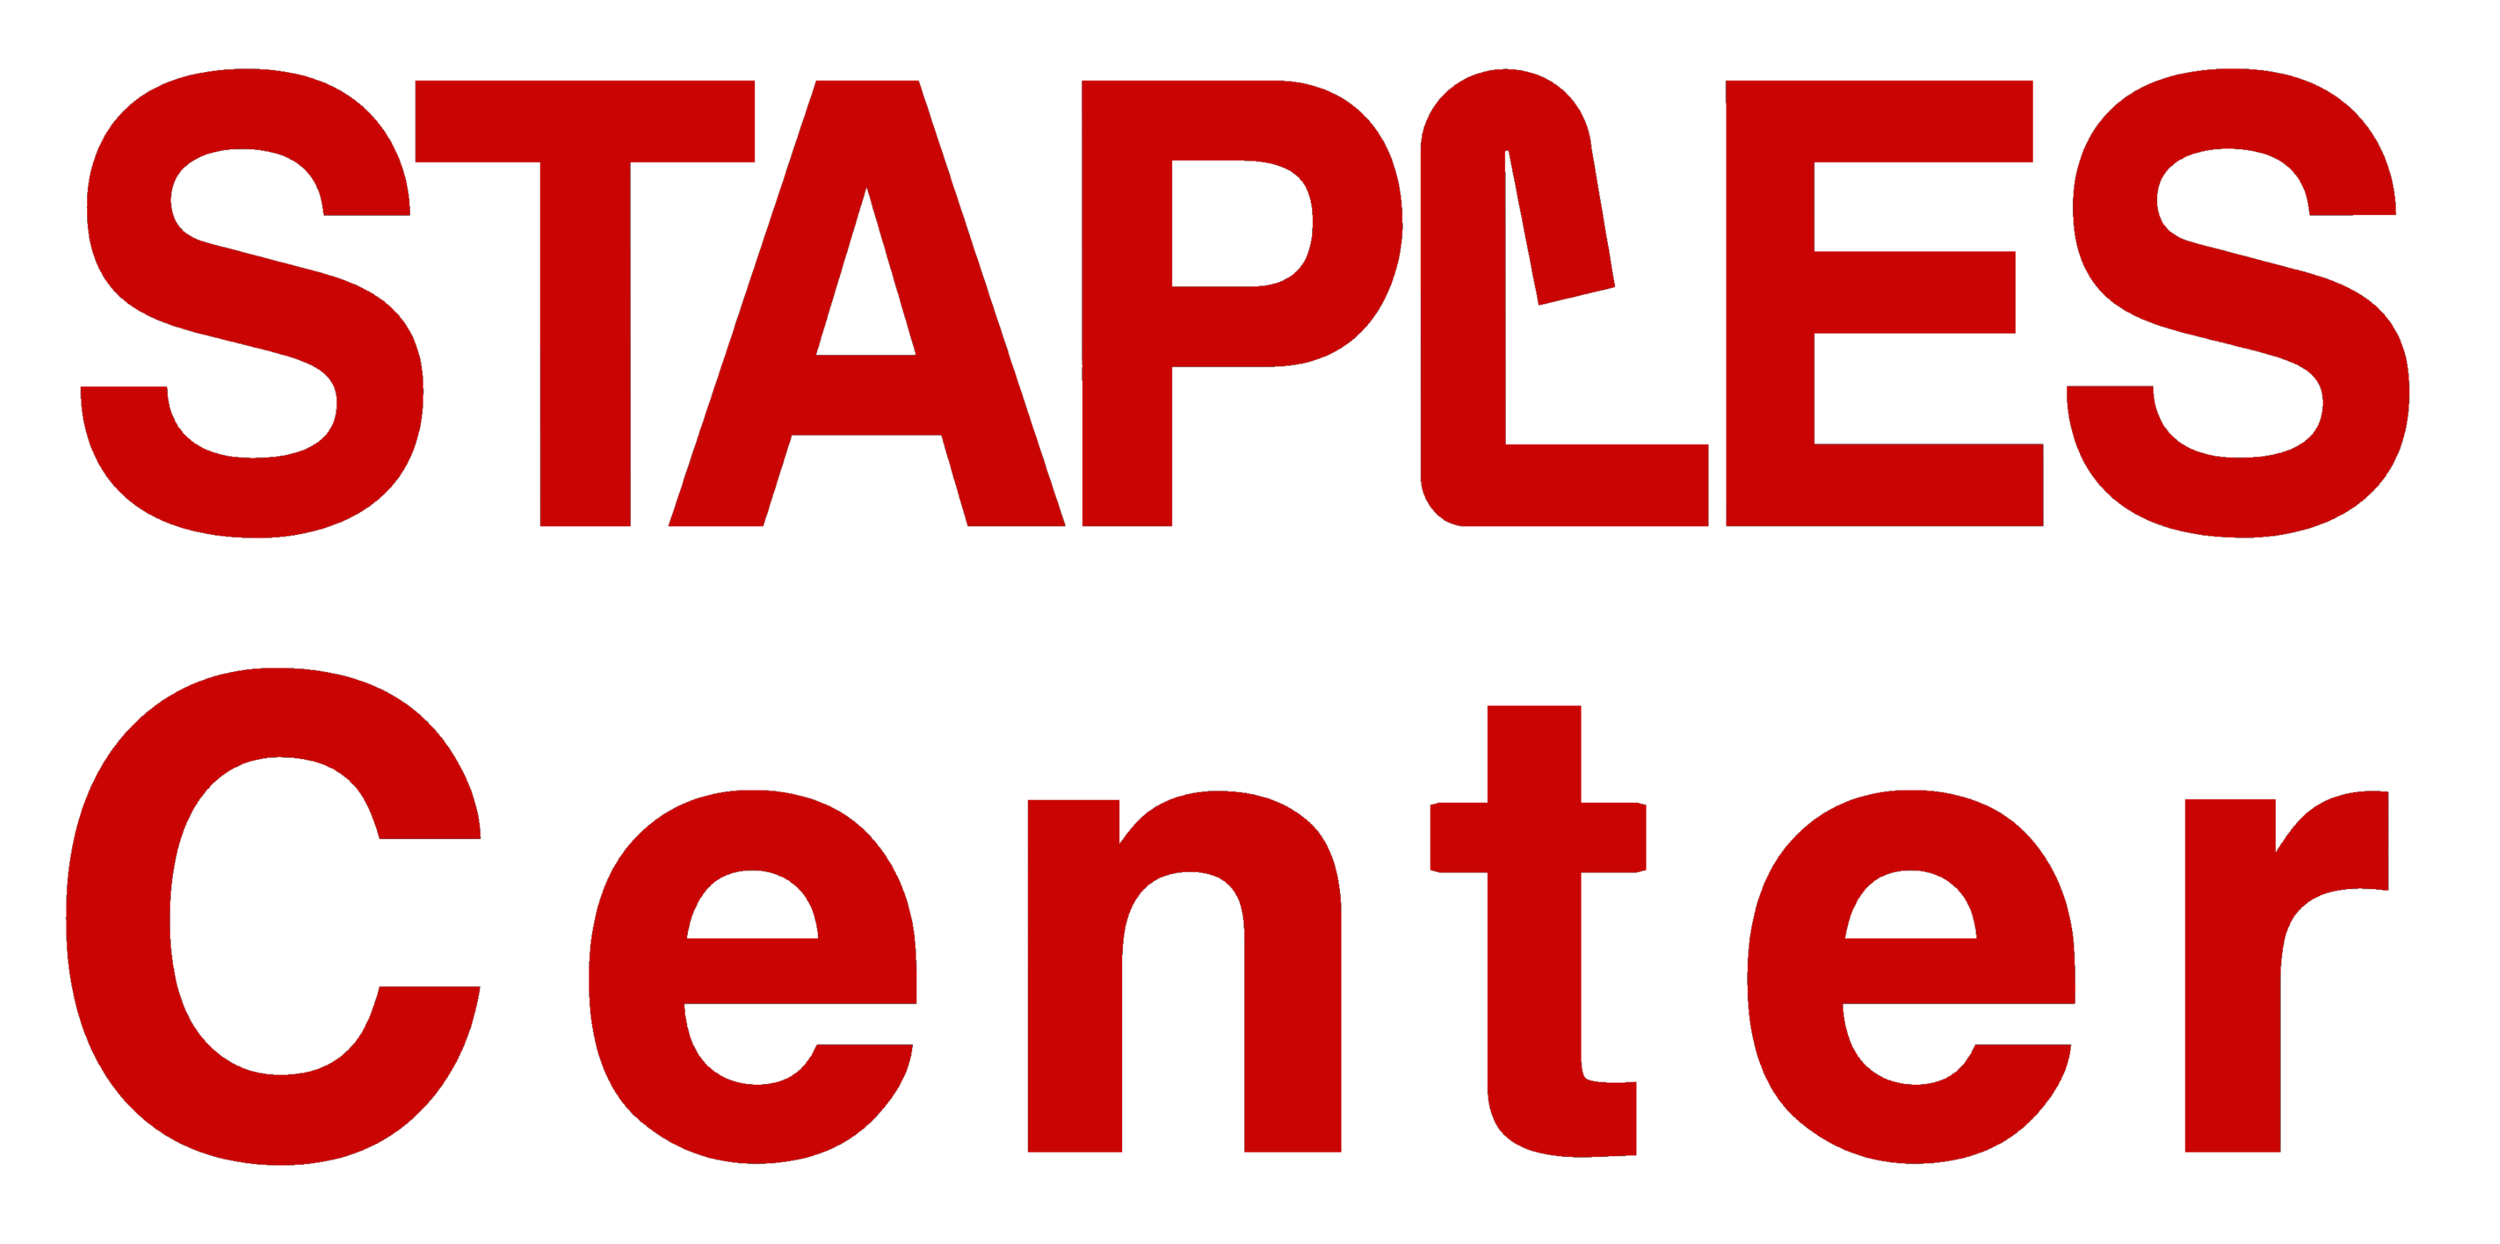 Staples_Center_logo_wordmark.png